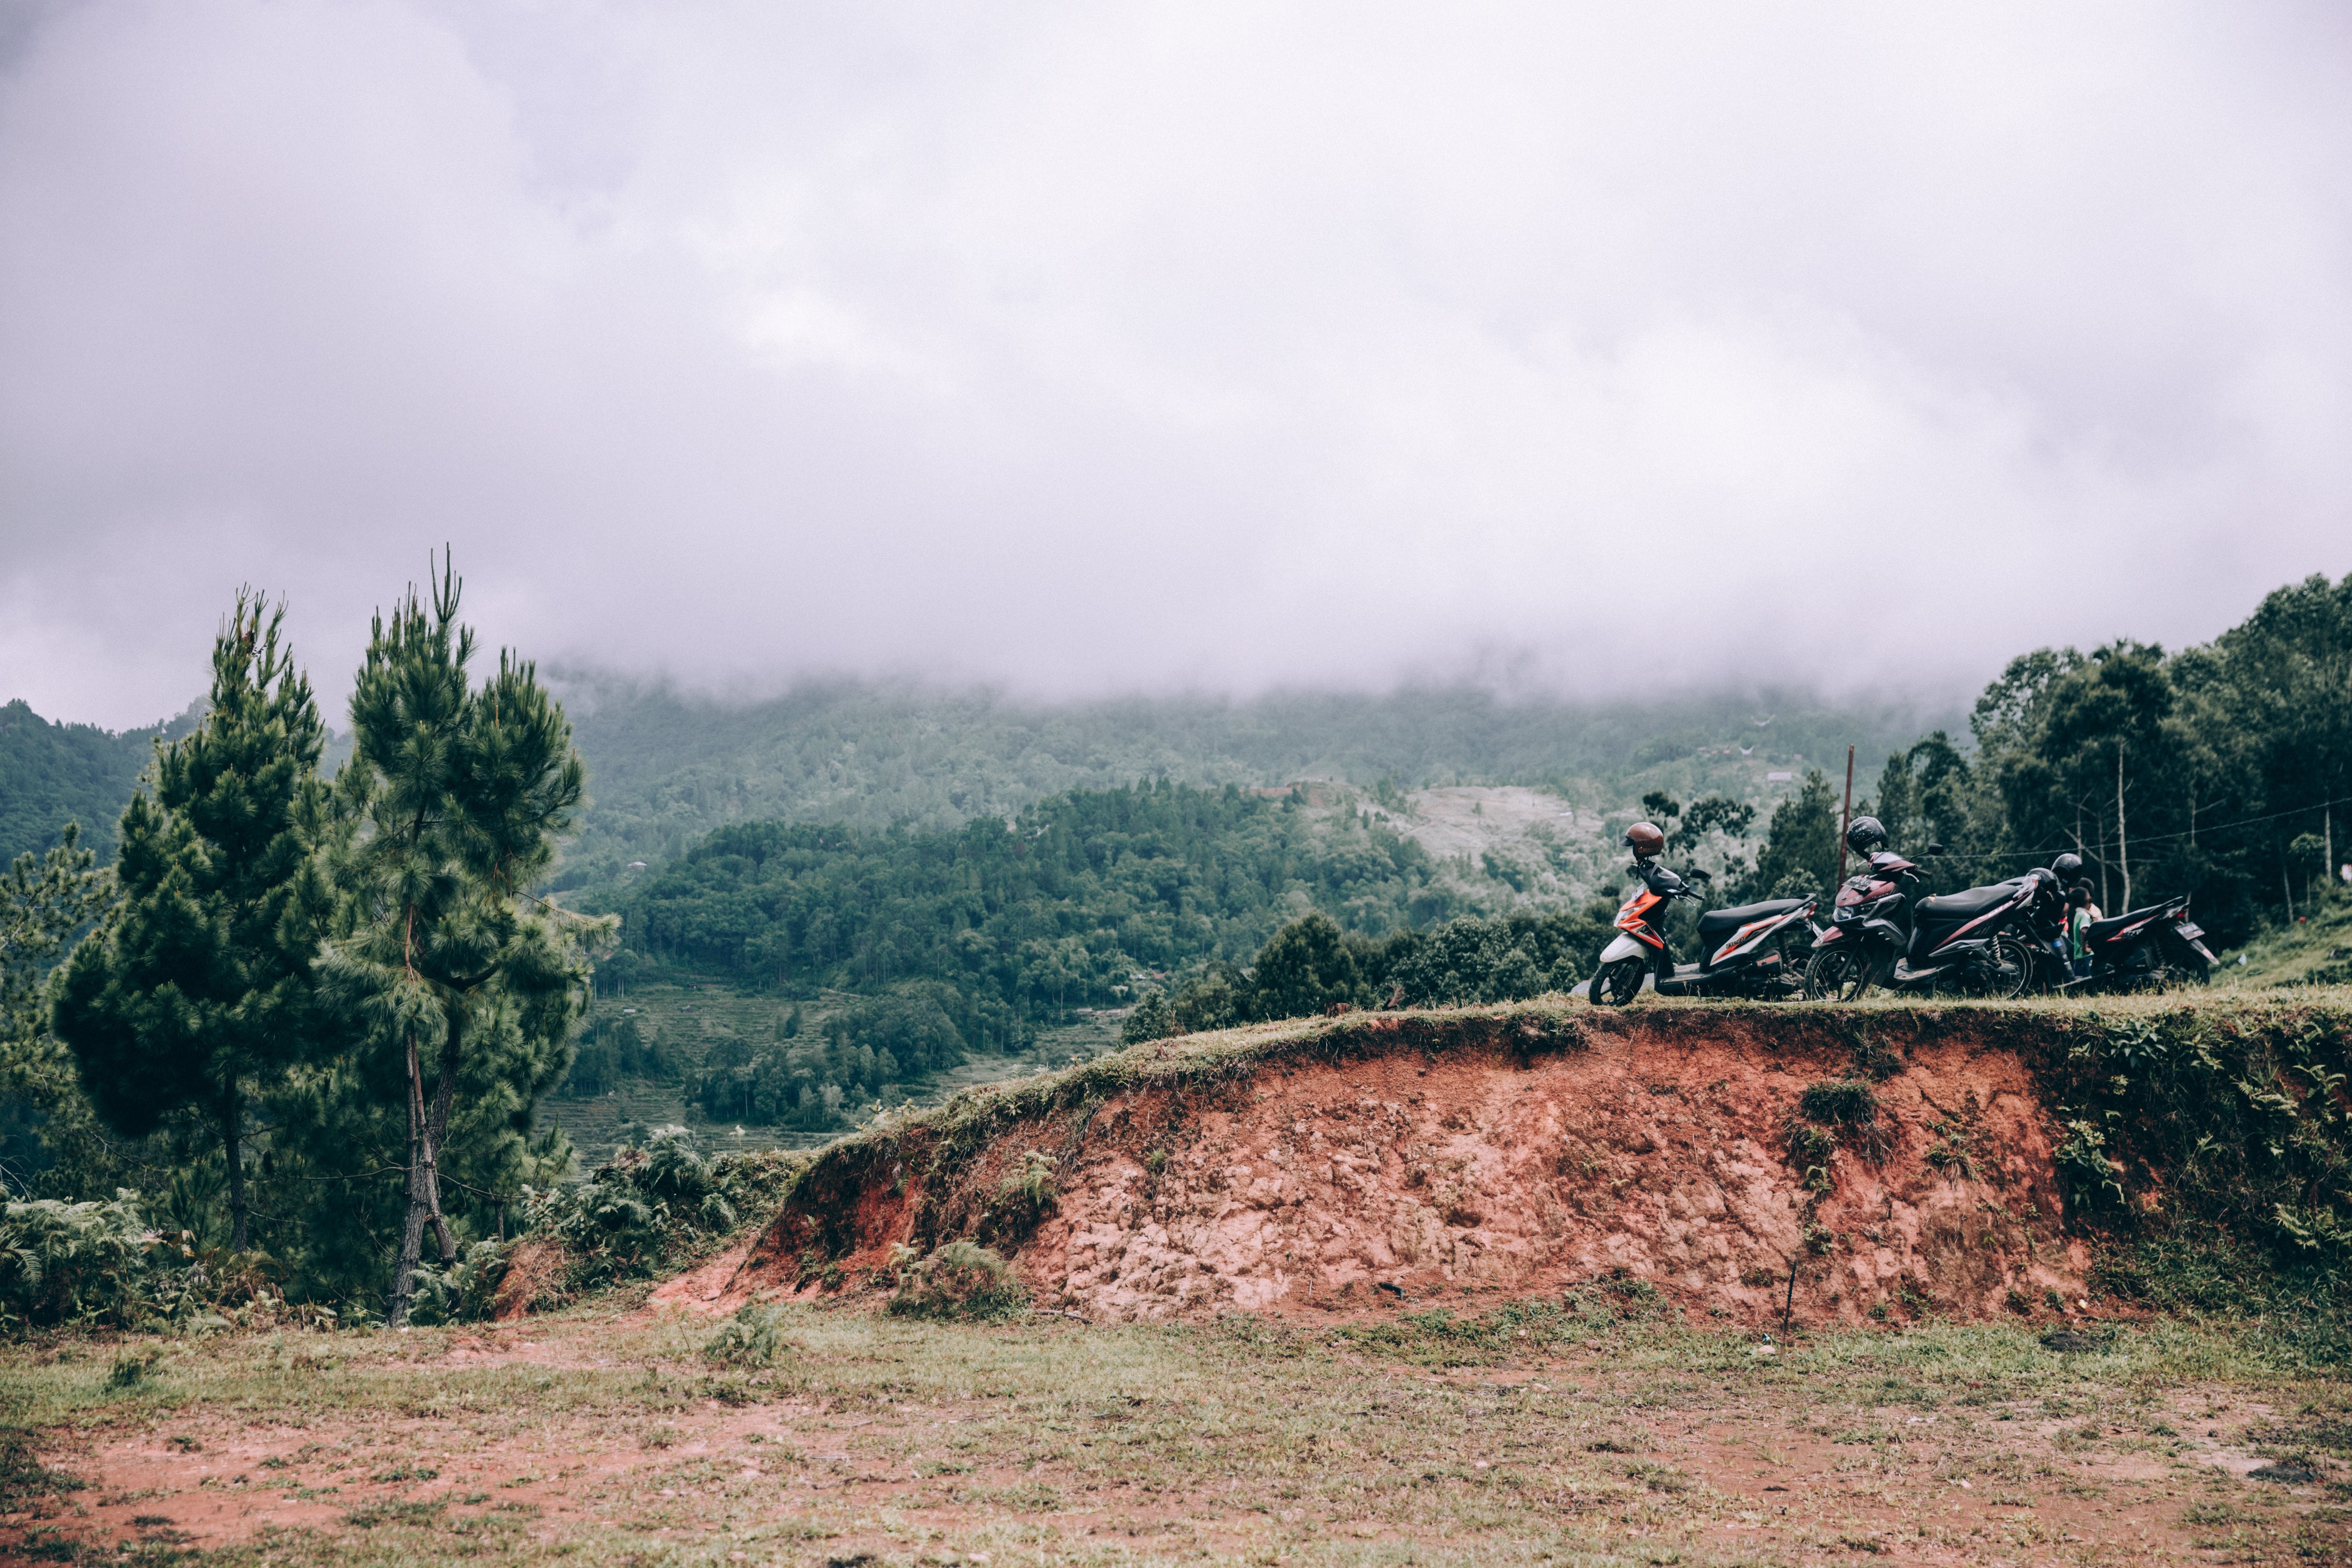 ジャングル道路に沿って駐車したツーリングバイクのグループ写真 